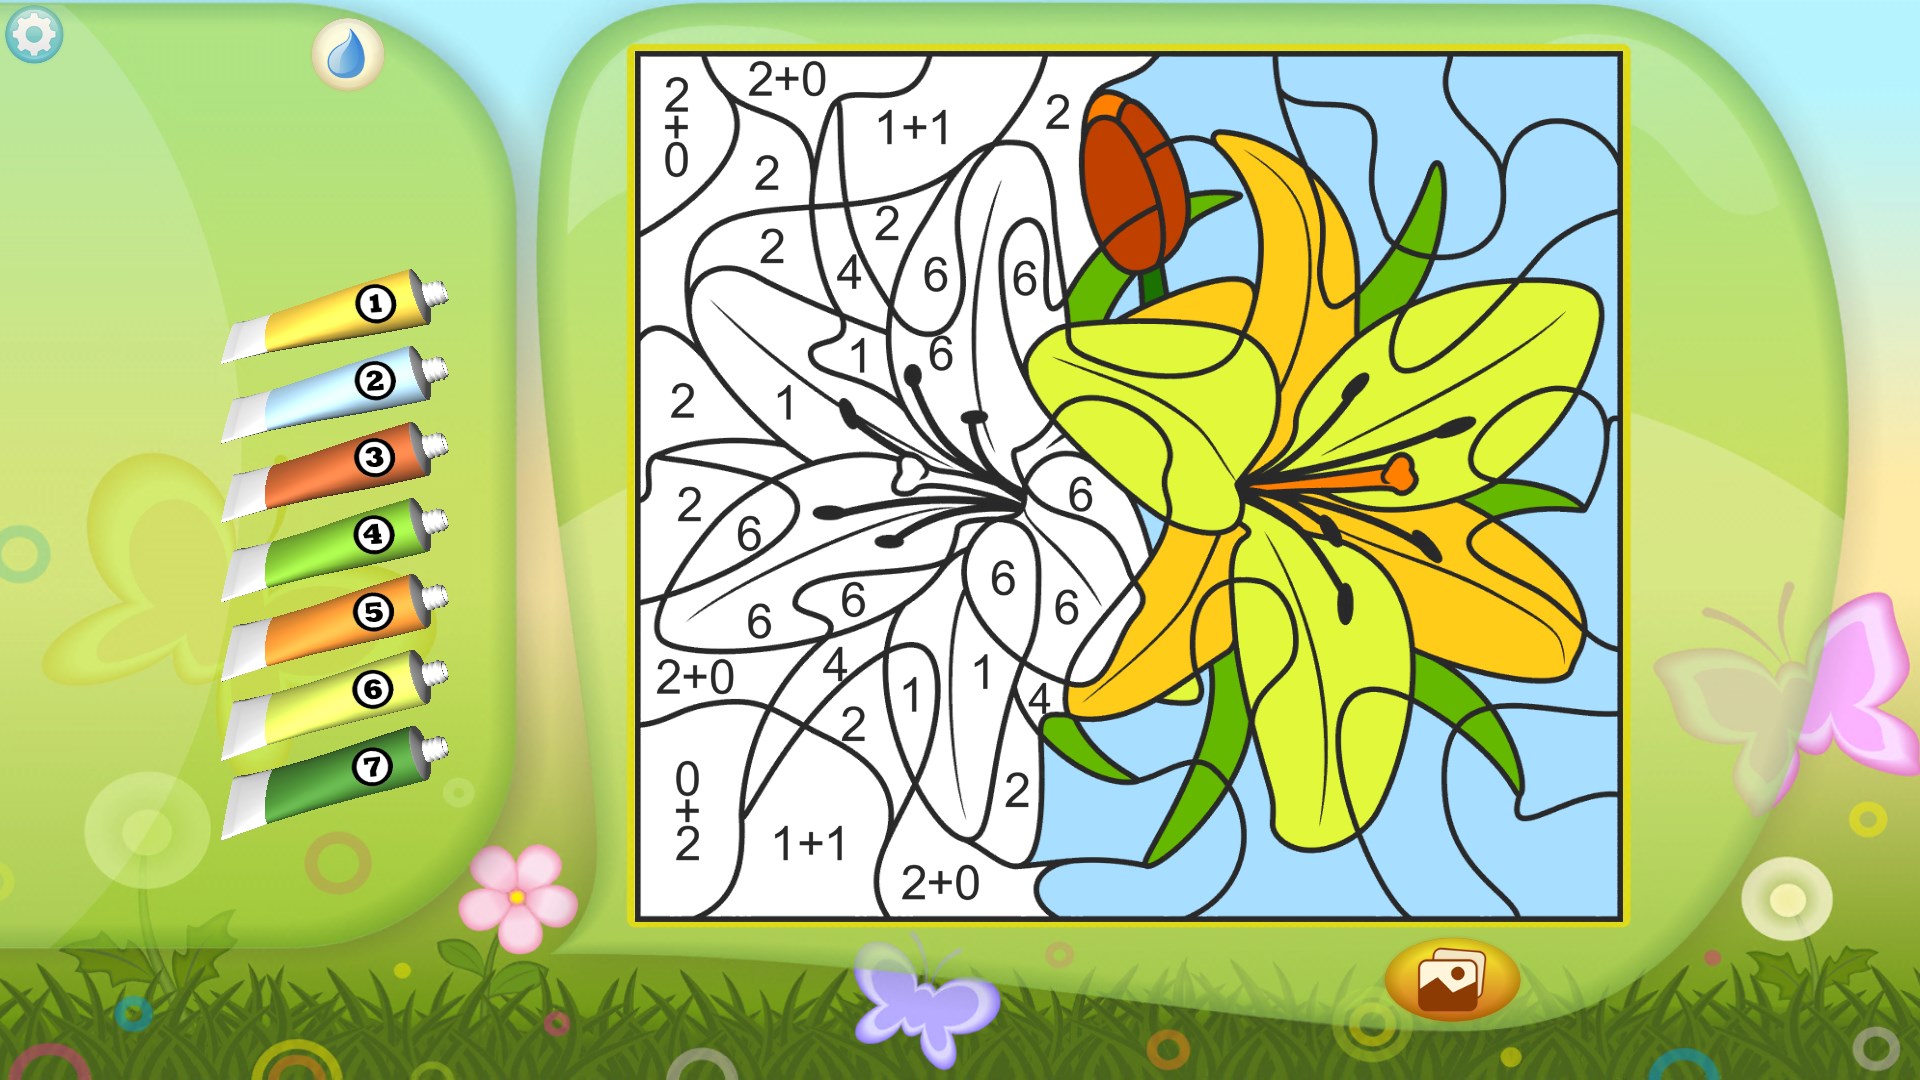 Раскраски онлайн для детей бесплатно: Раскраски для детей 3-7 лет, играть онлайн и распечатать картинки